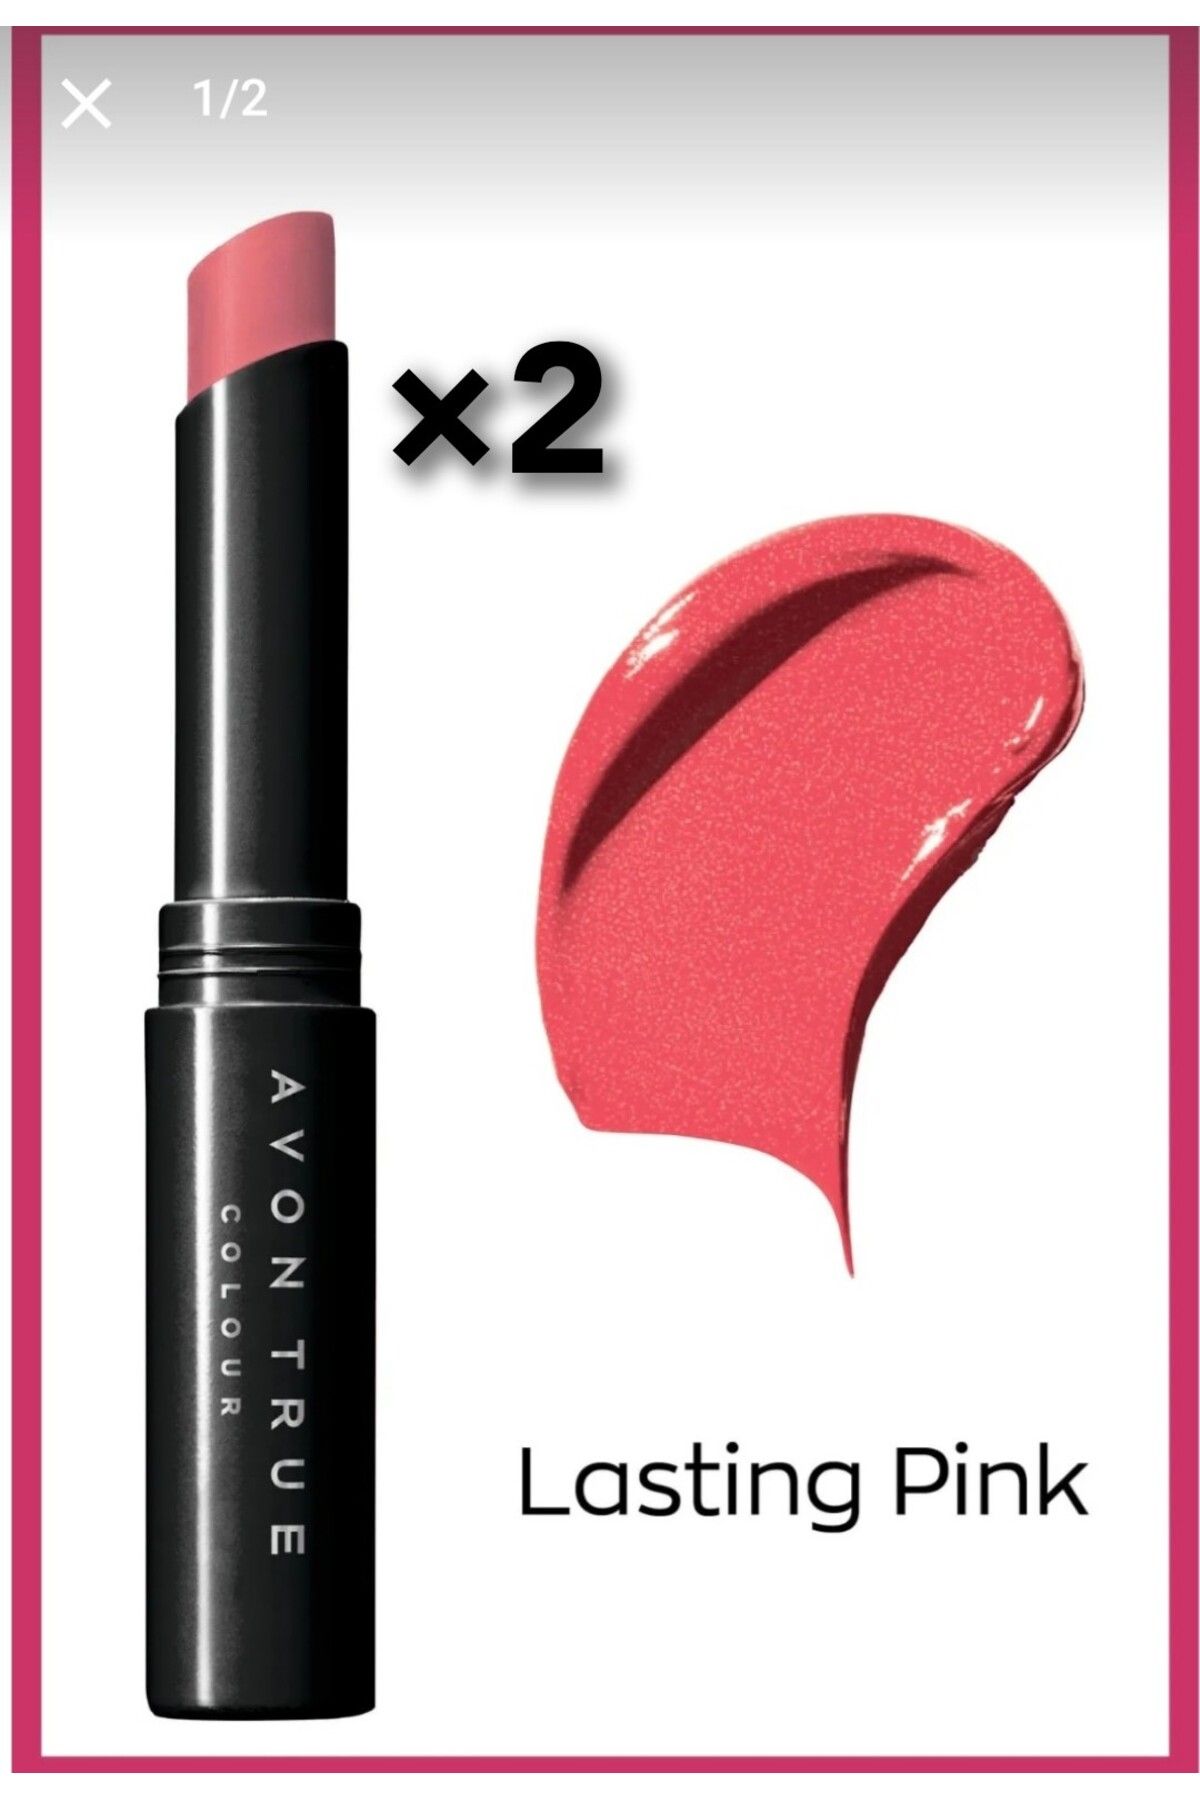 Avon Ultra Beauty Stik Ruj lastıng pink 2 adet